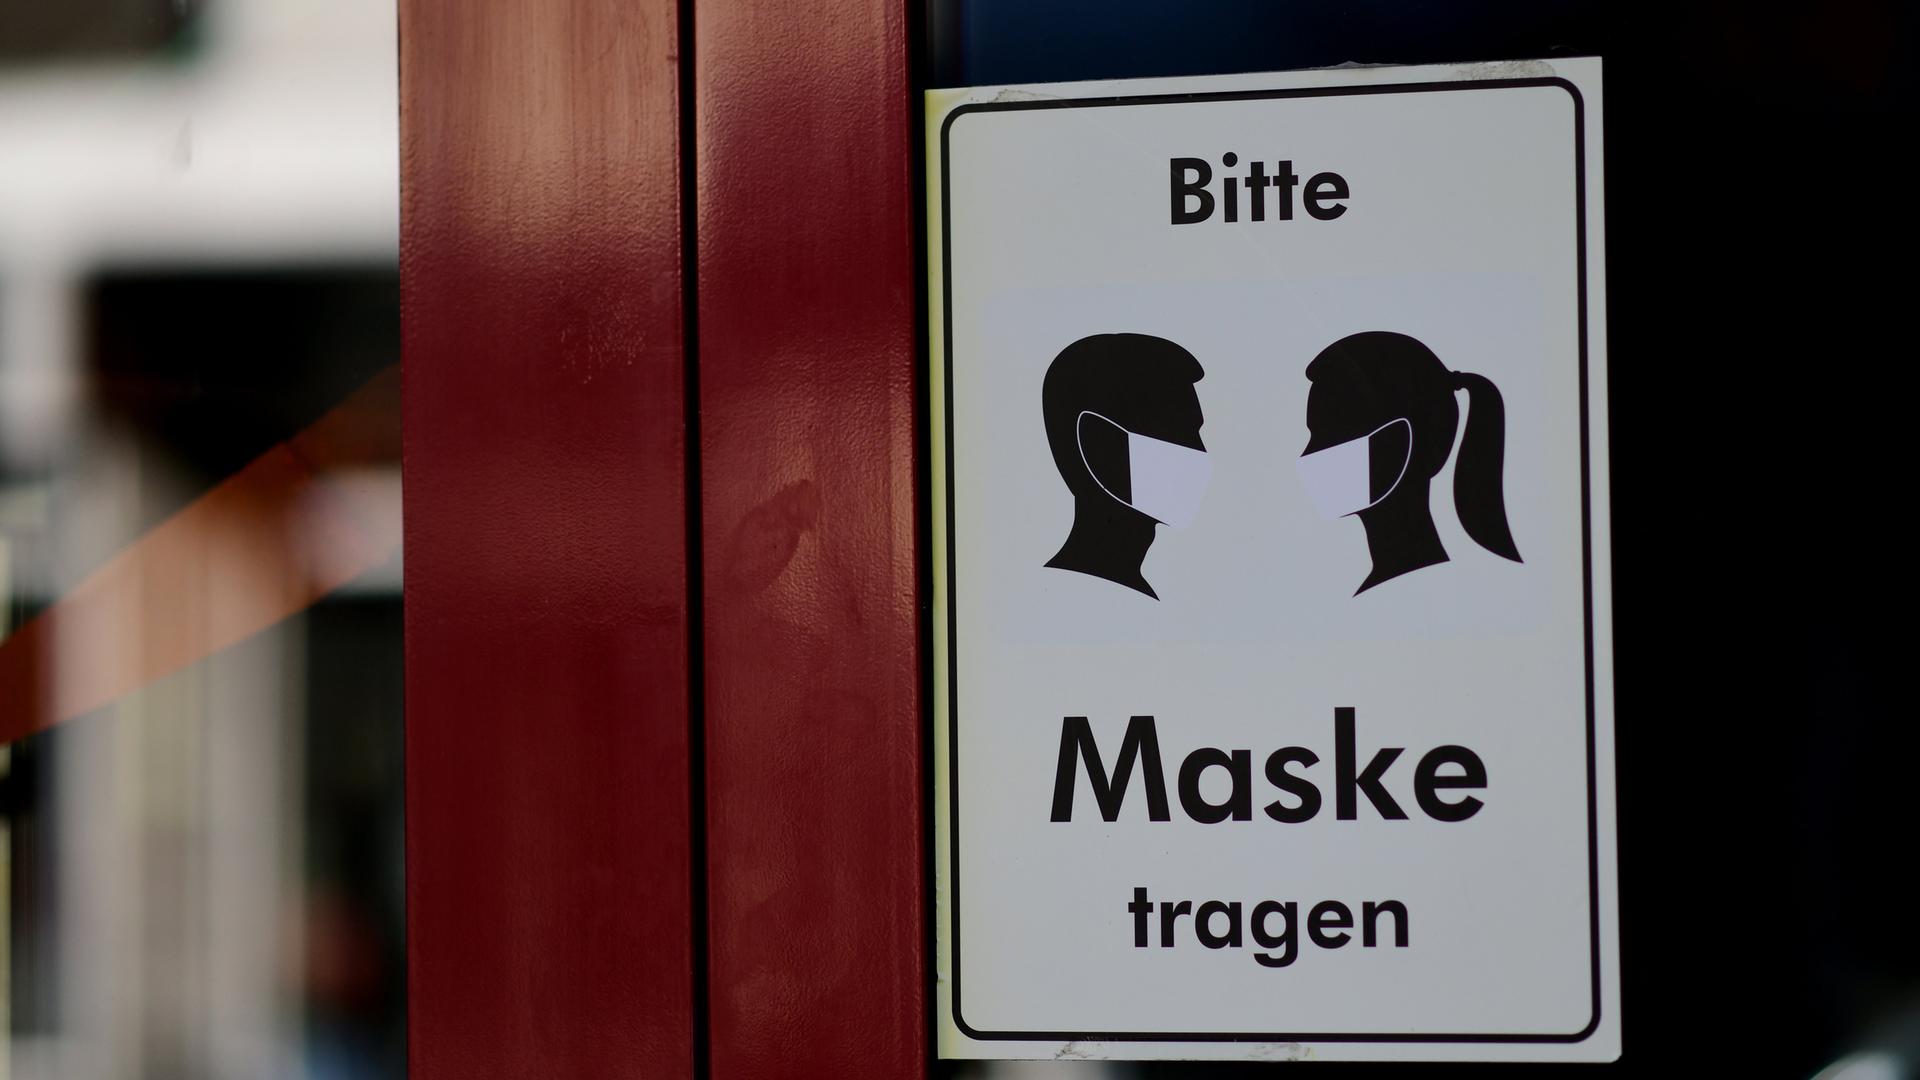 Ein Hinweisschild zum tragen einer Schutzmaske an der Tür von einem Geschäft, aufgenommen am 07.03.2022 in Köln.